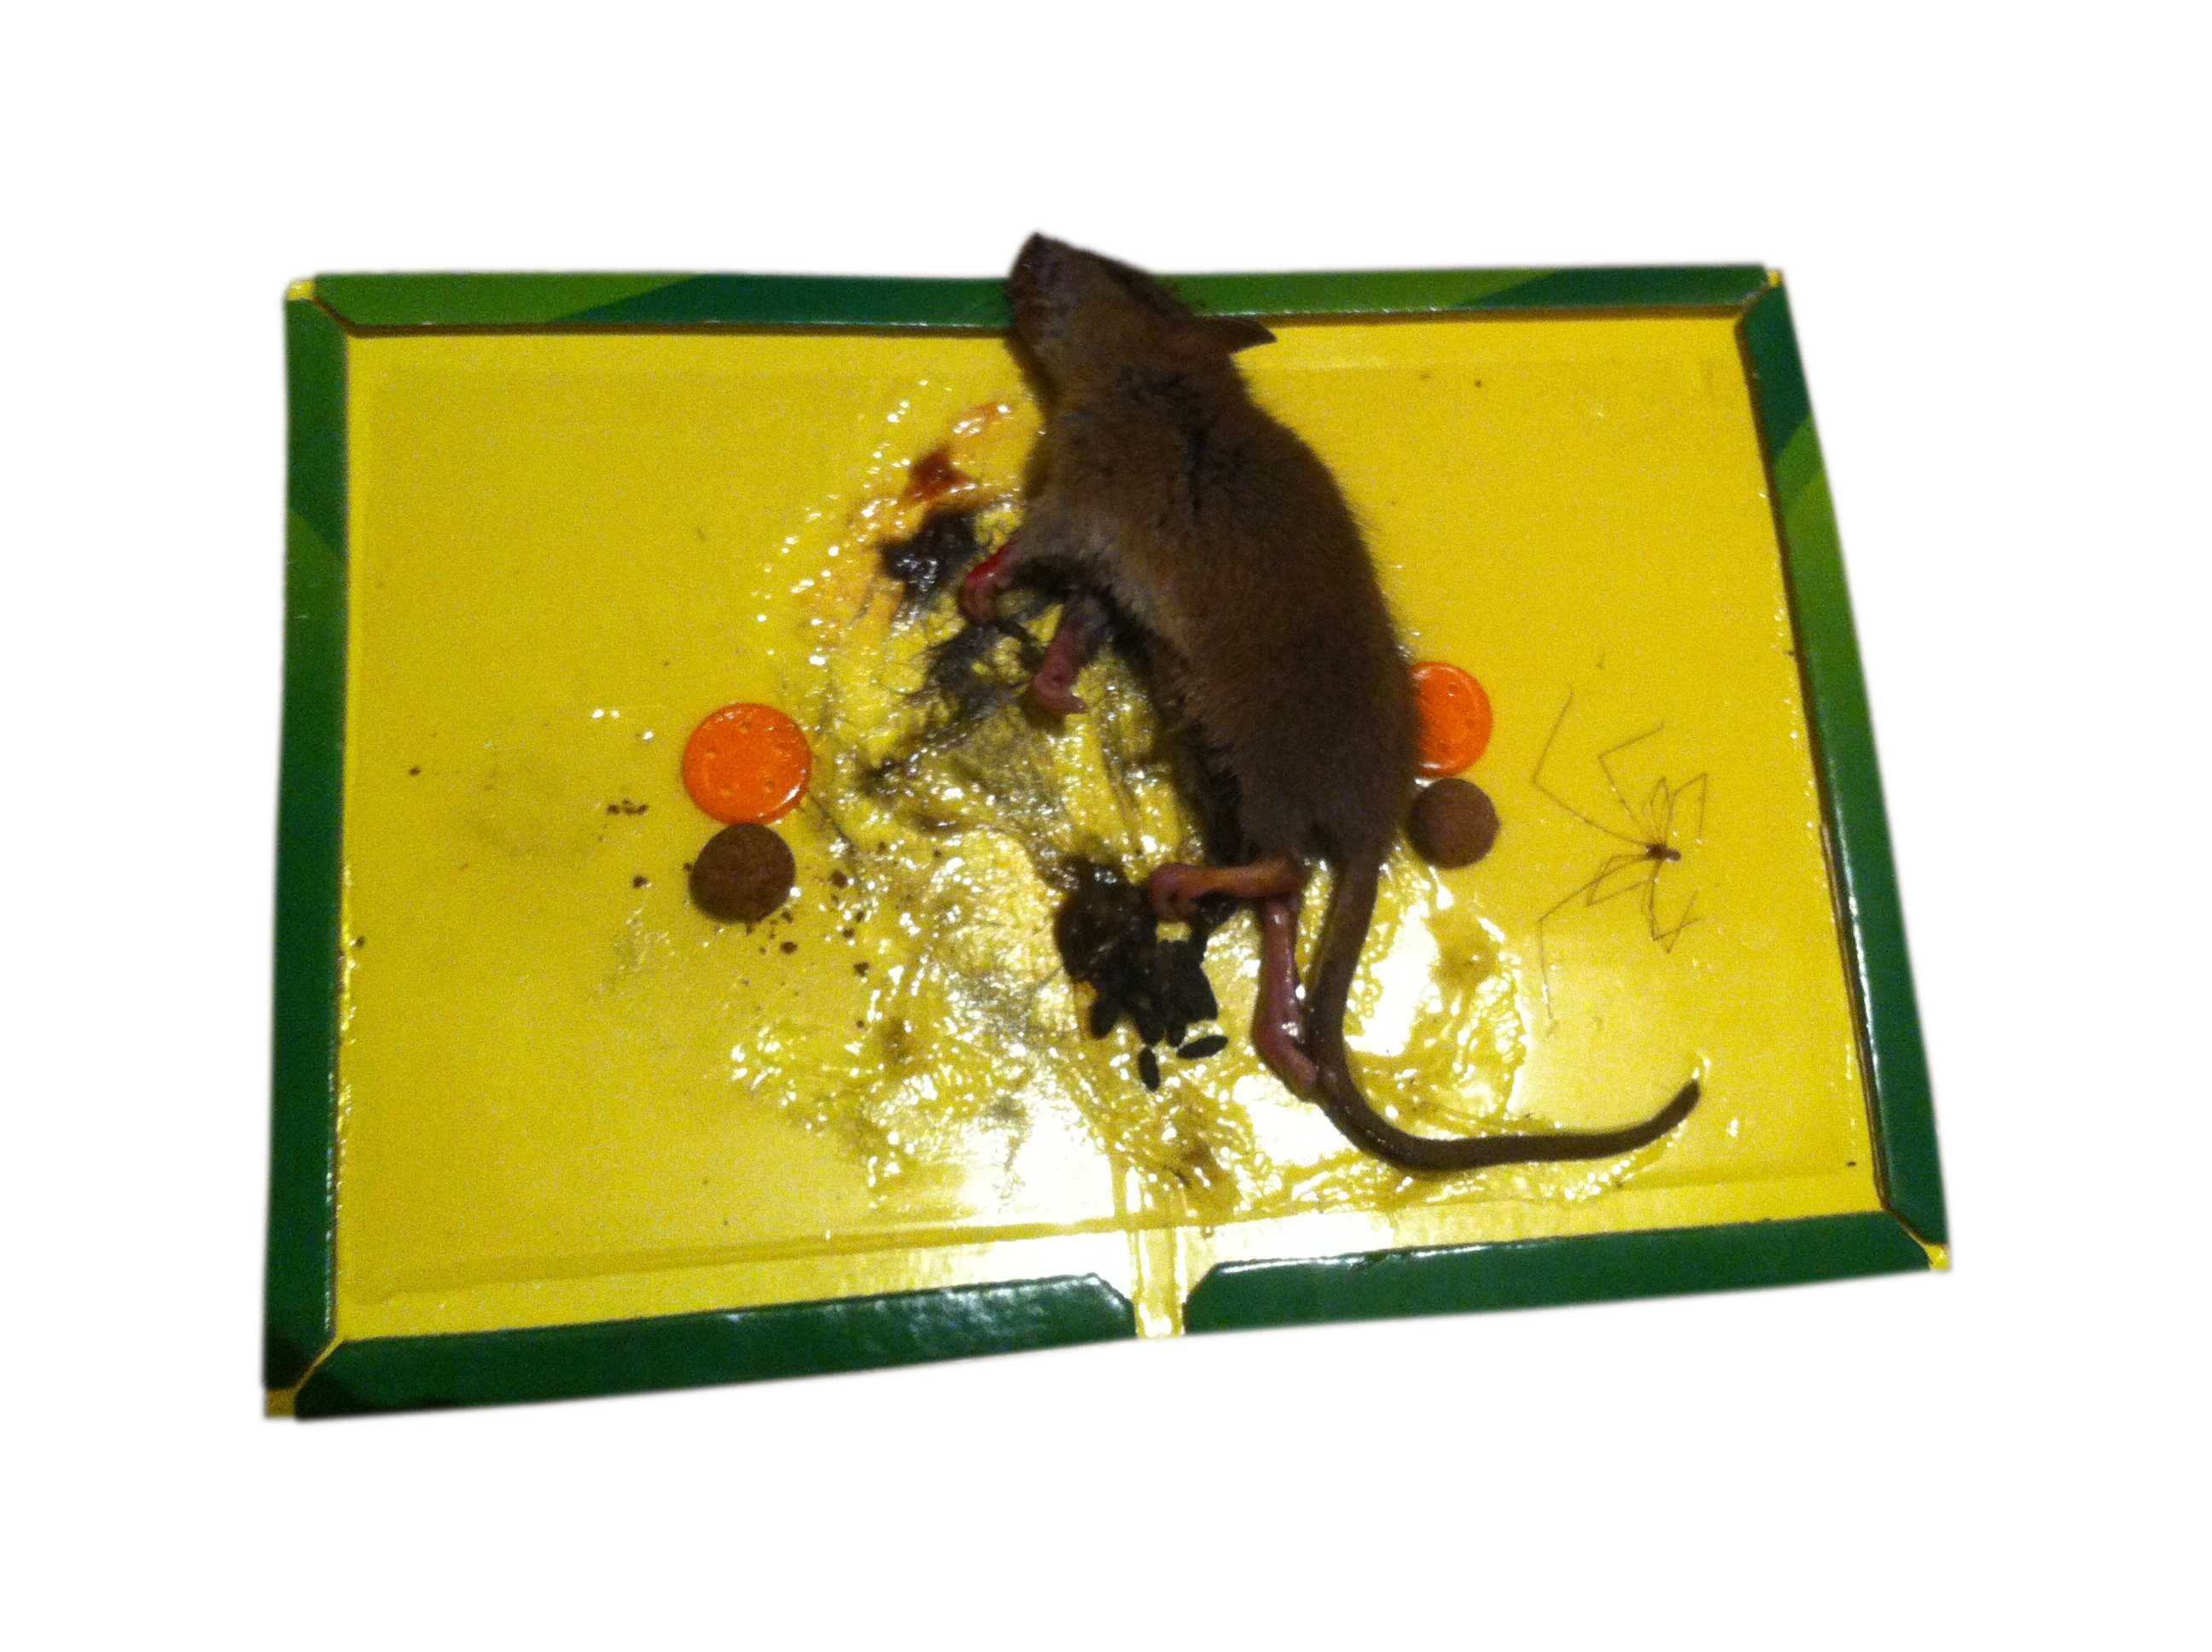 Pułapka na myszy lep myszołapka klejowa 24cm x 17cm  10szt